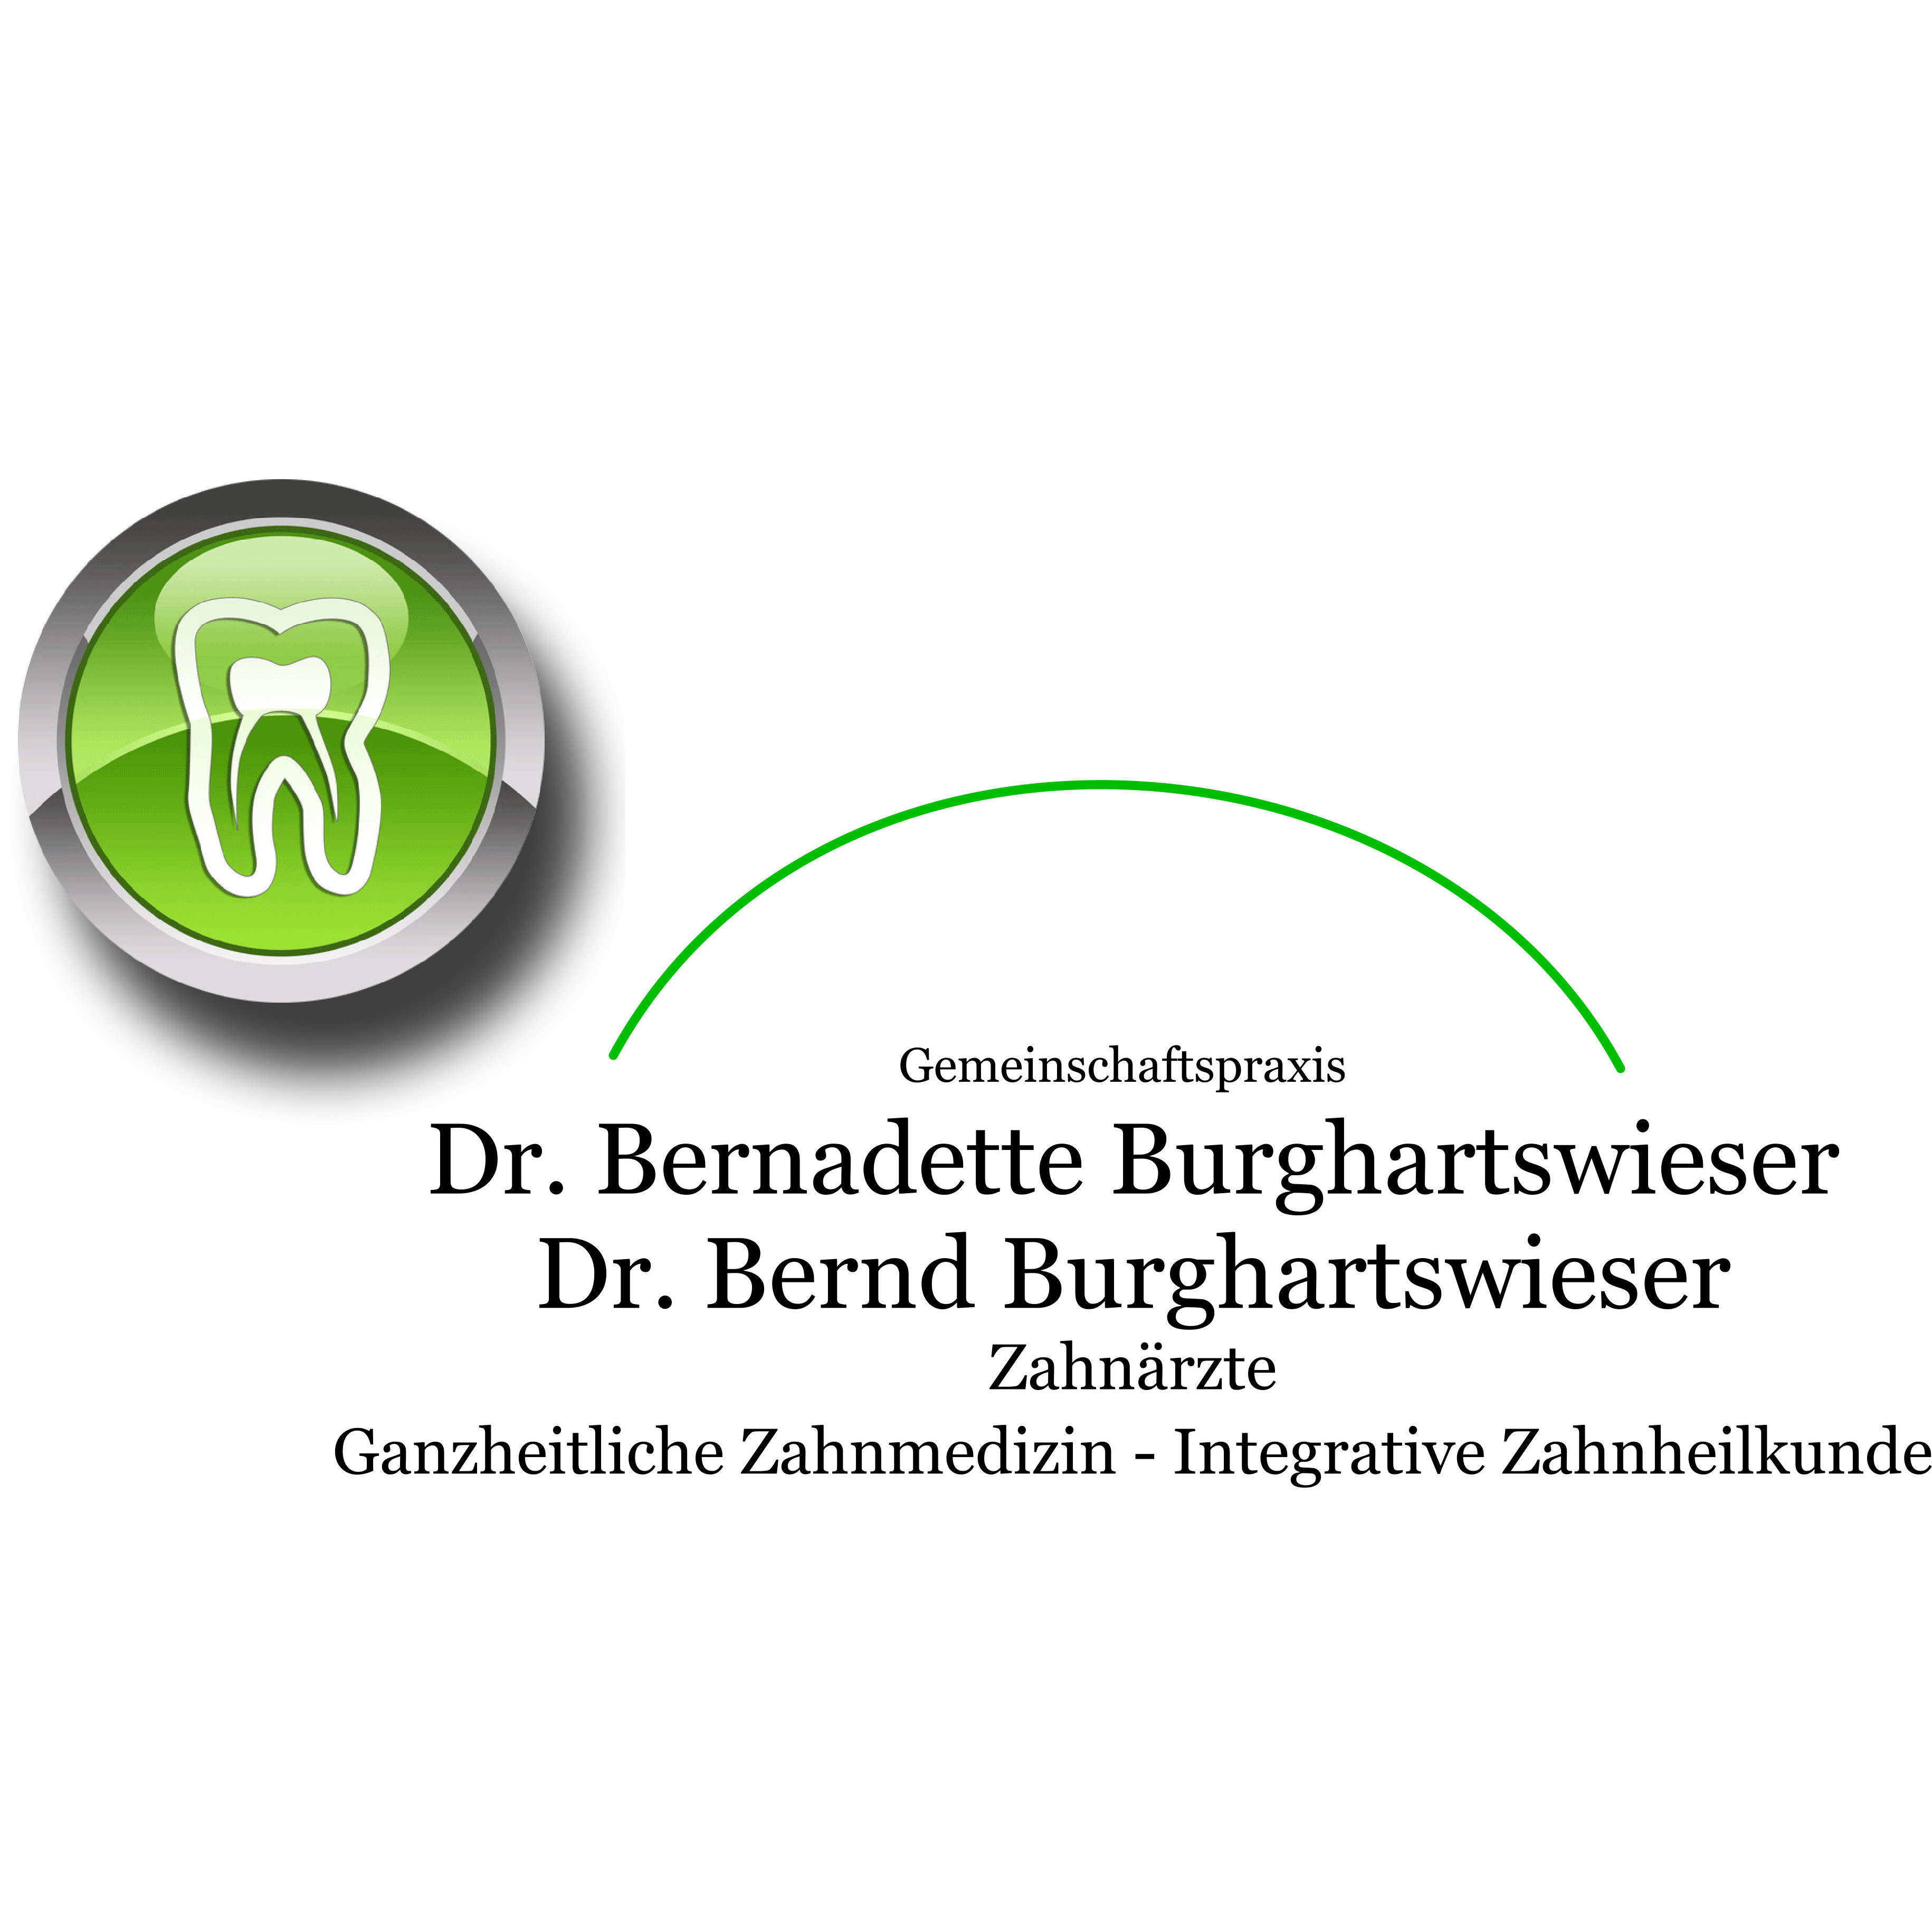 Gemeinschaftspraxis für ganzheitliche Zahnheilkunde und biologische Zahnmedizin - Neustadt/W. Logo